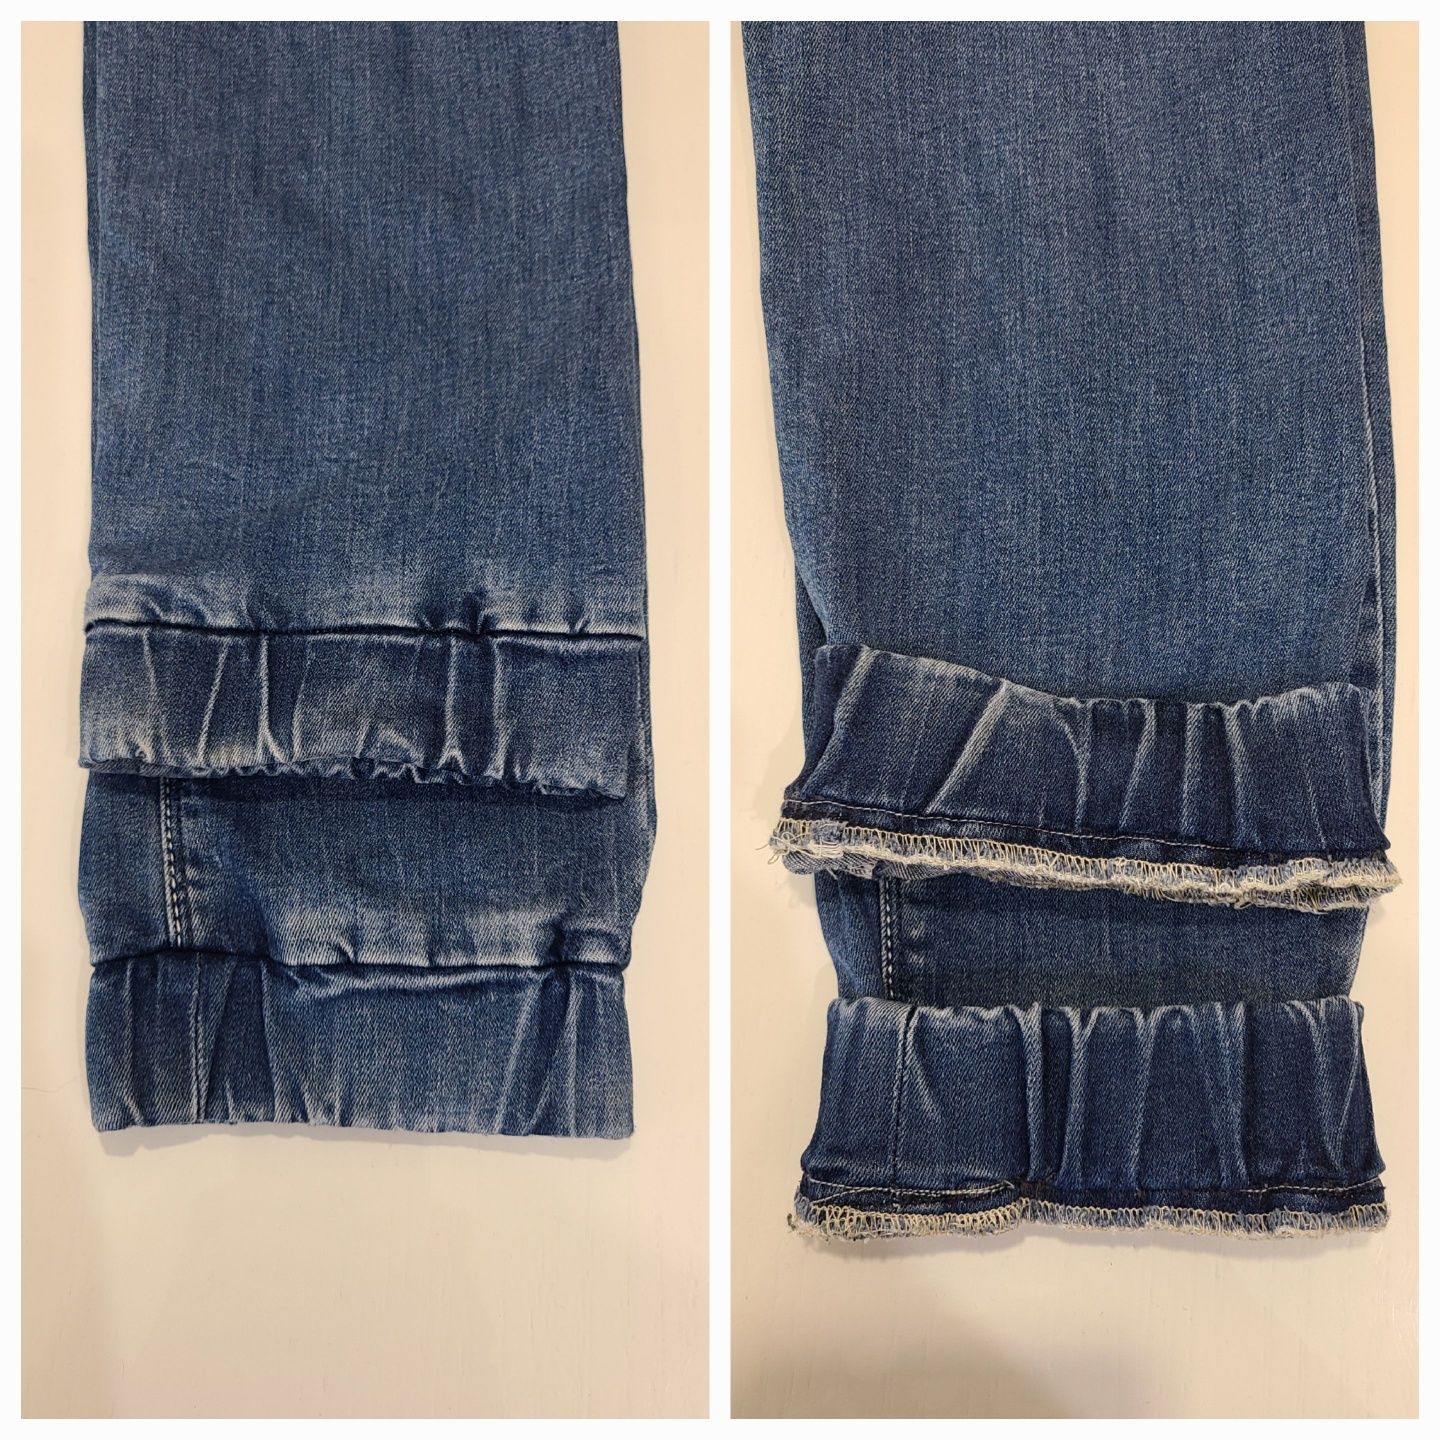 A-yugi джогеры, джинсы на подростка, рост 164, 170